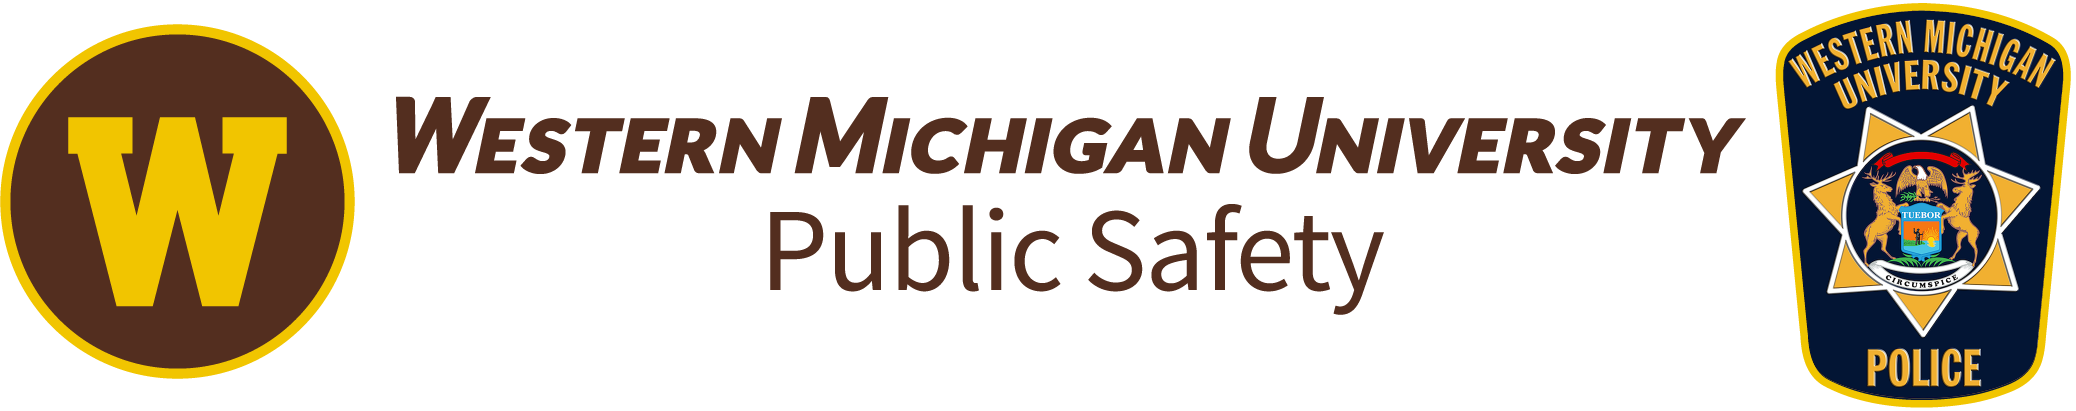 WMU public safety website logo